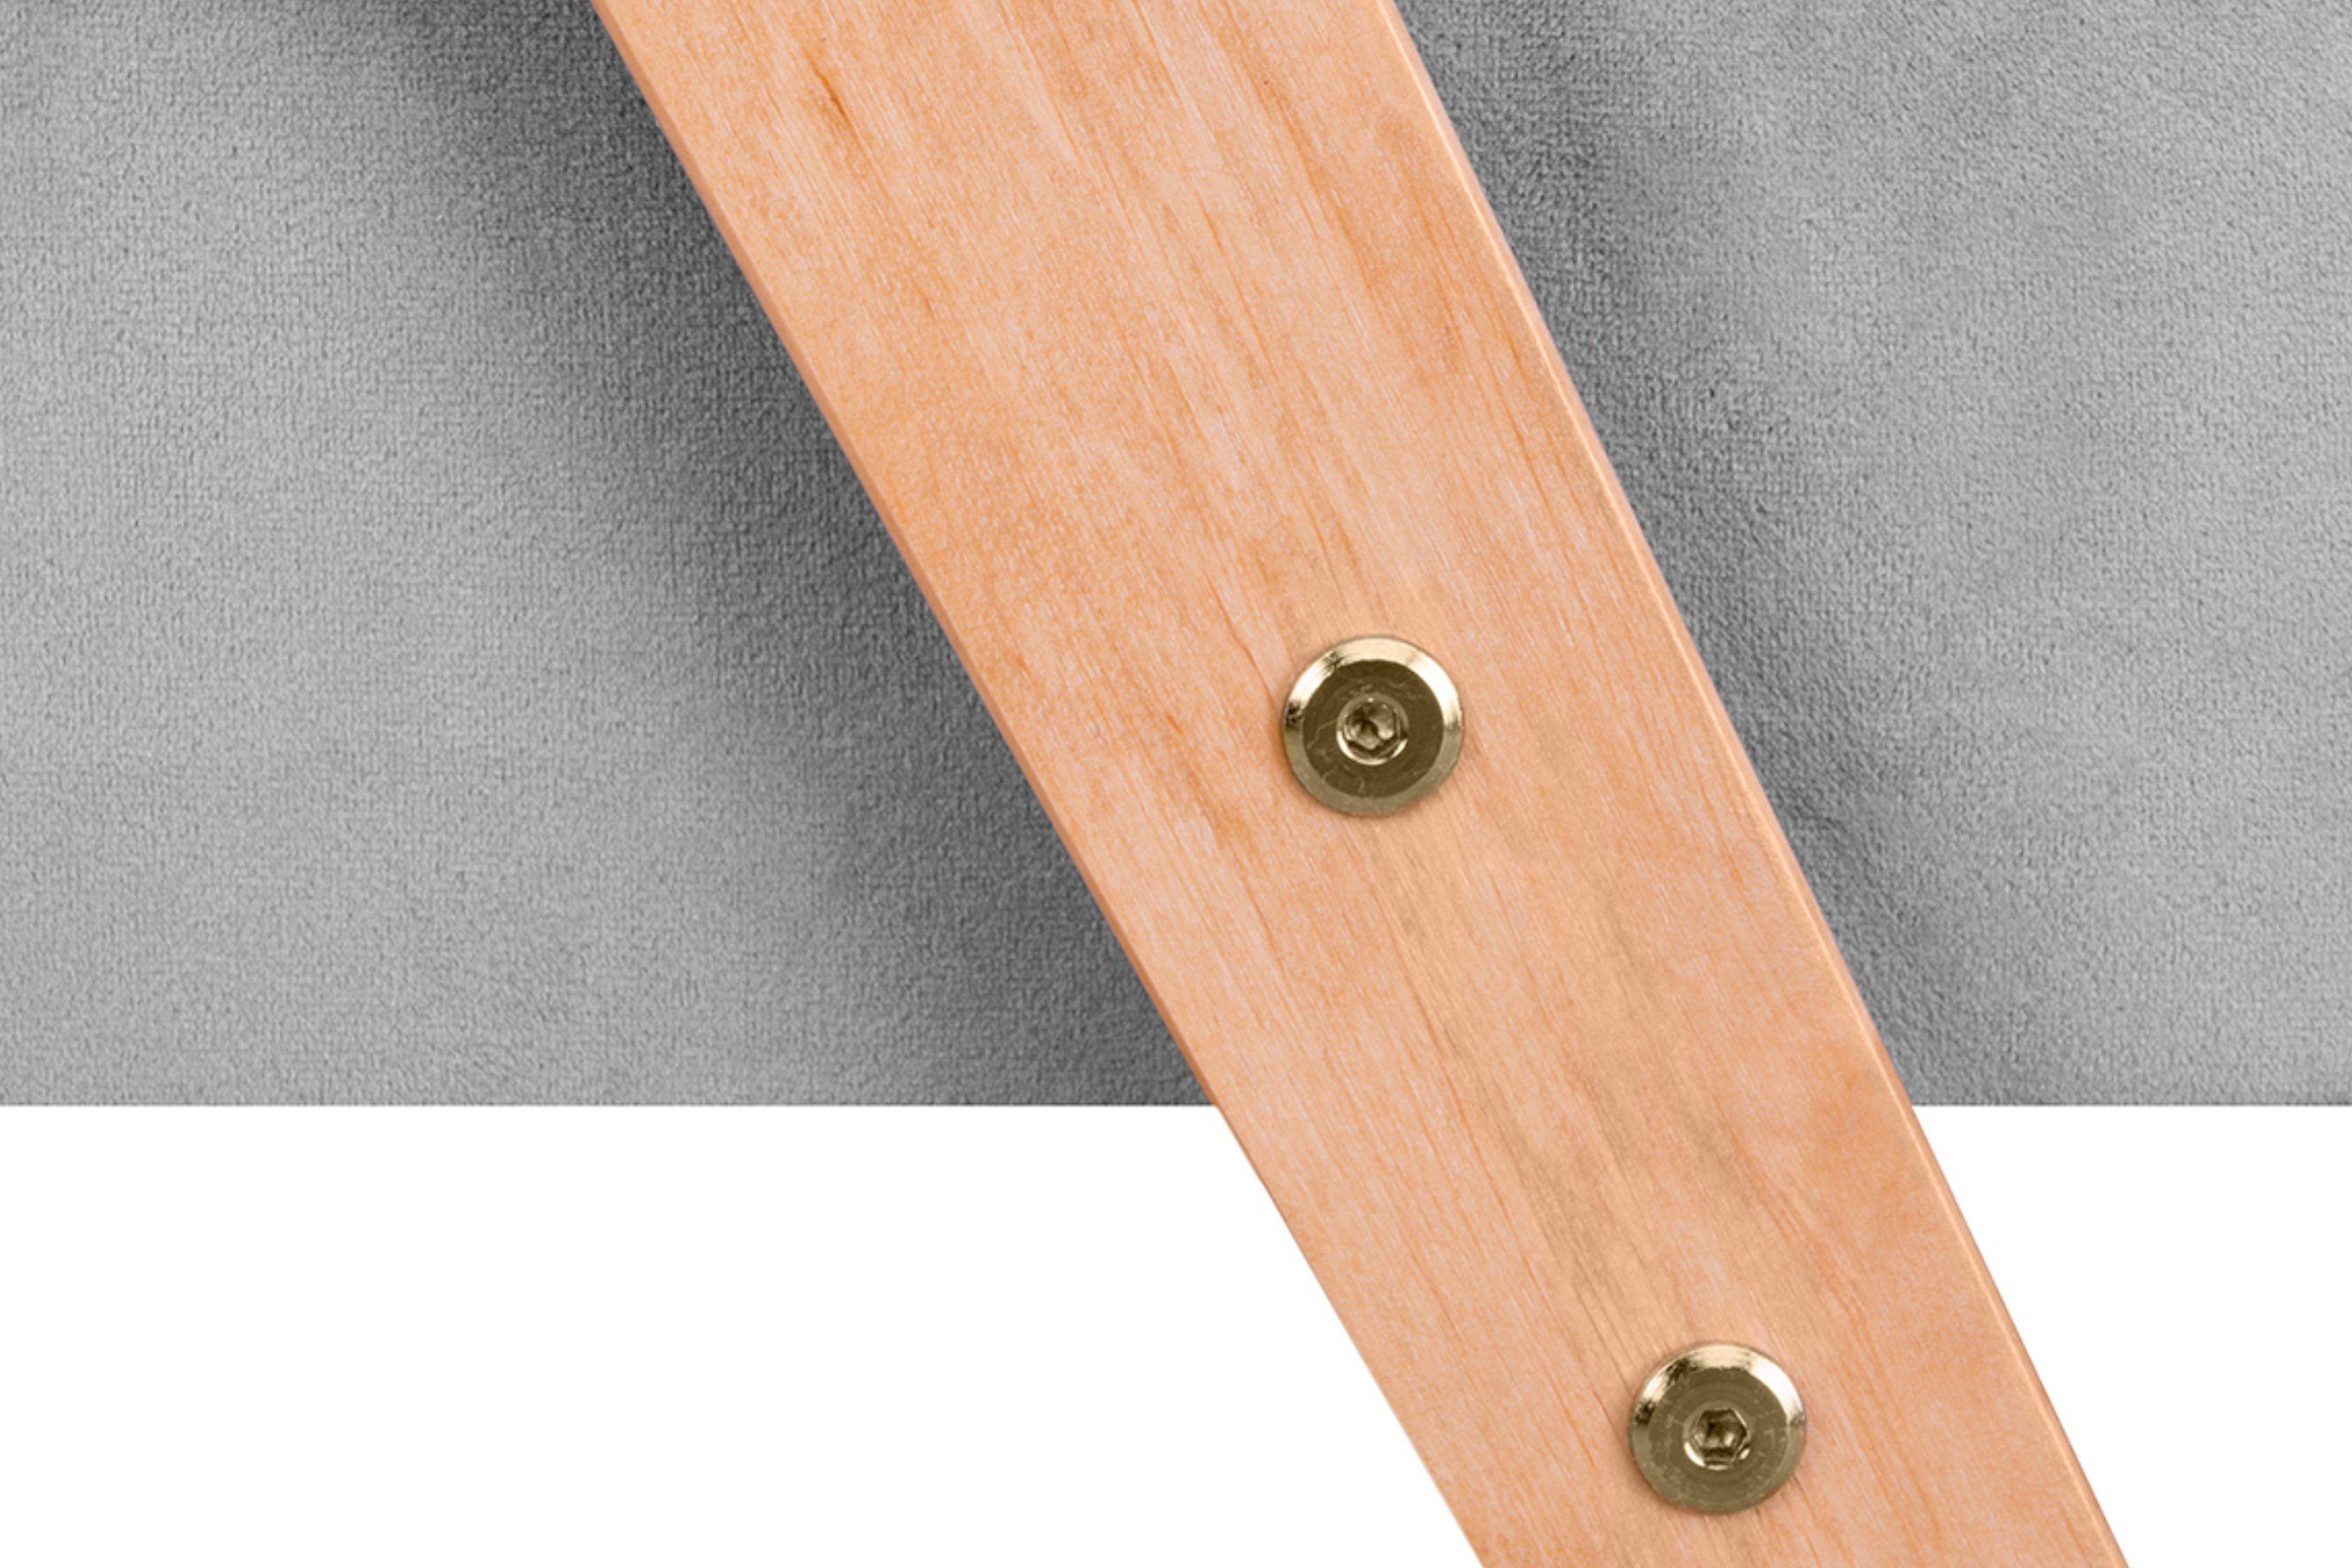 Holz, Sessel, lackiertem Rahmen profilierte Konsimo Rückenlehne aus NASET Cocktailsessel